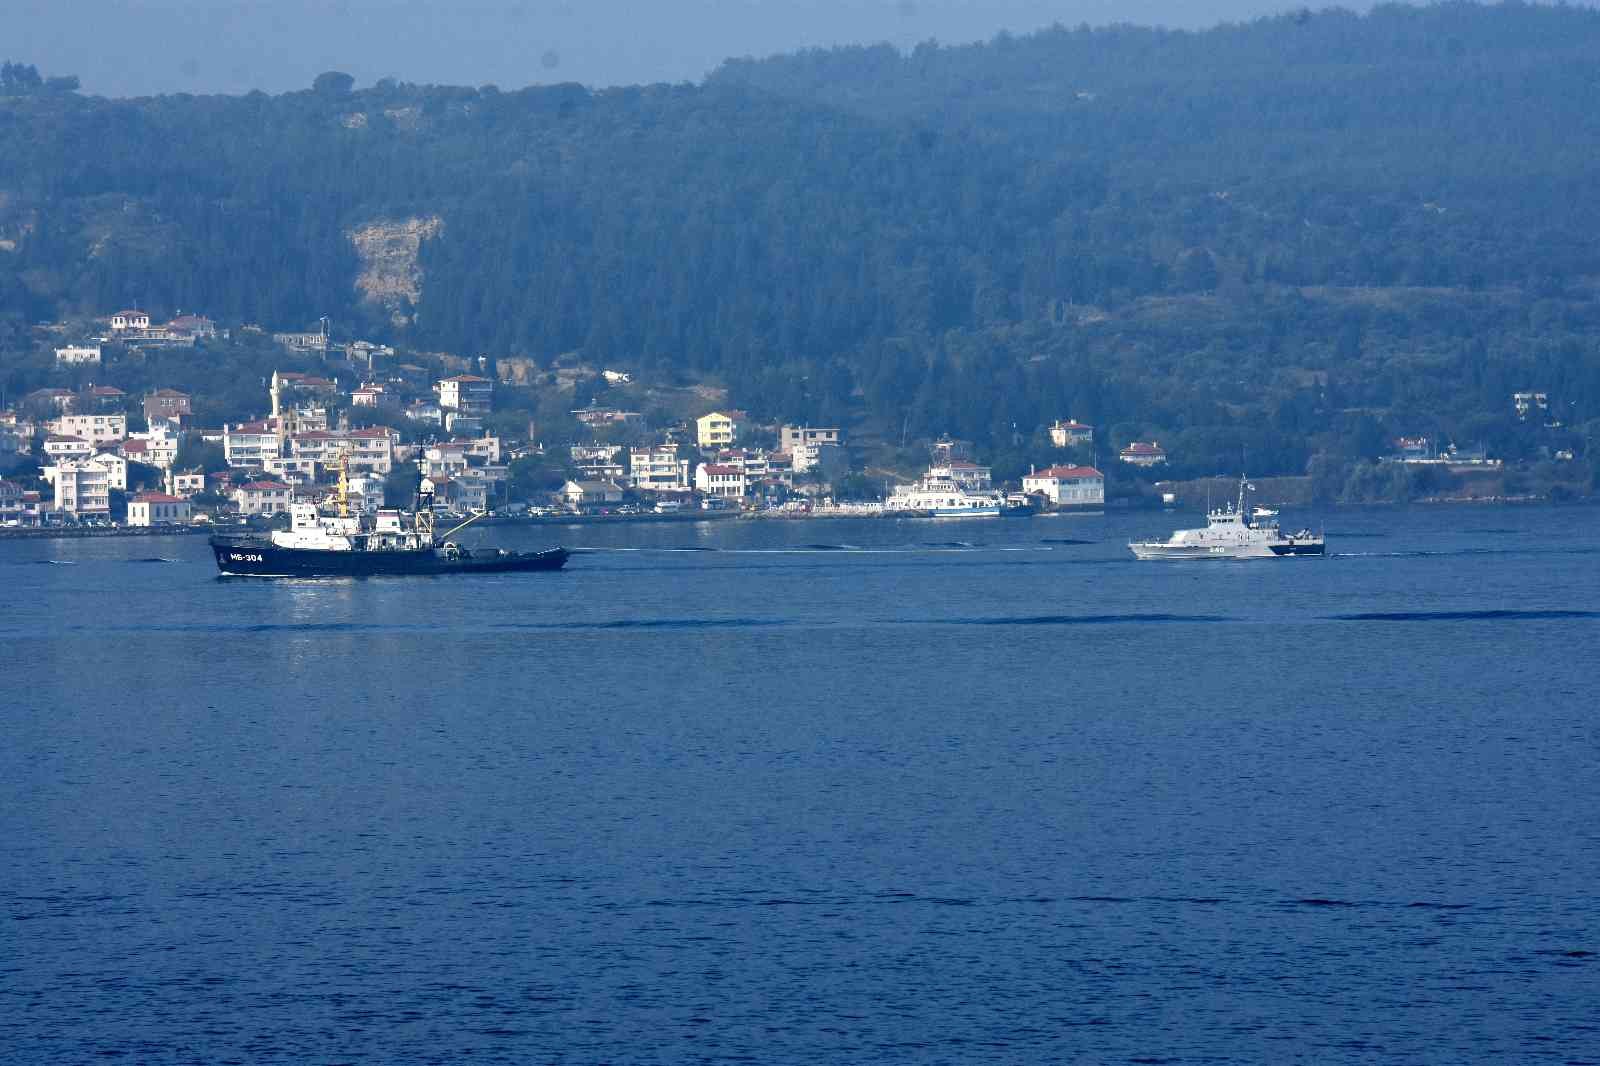 Rus savaş gemileri Çanakkale Boğazı’ndan geçti #canakkale